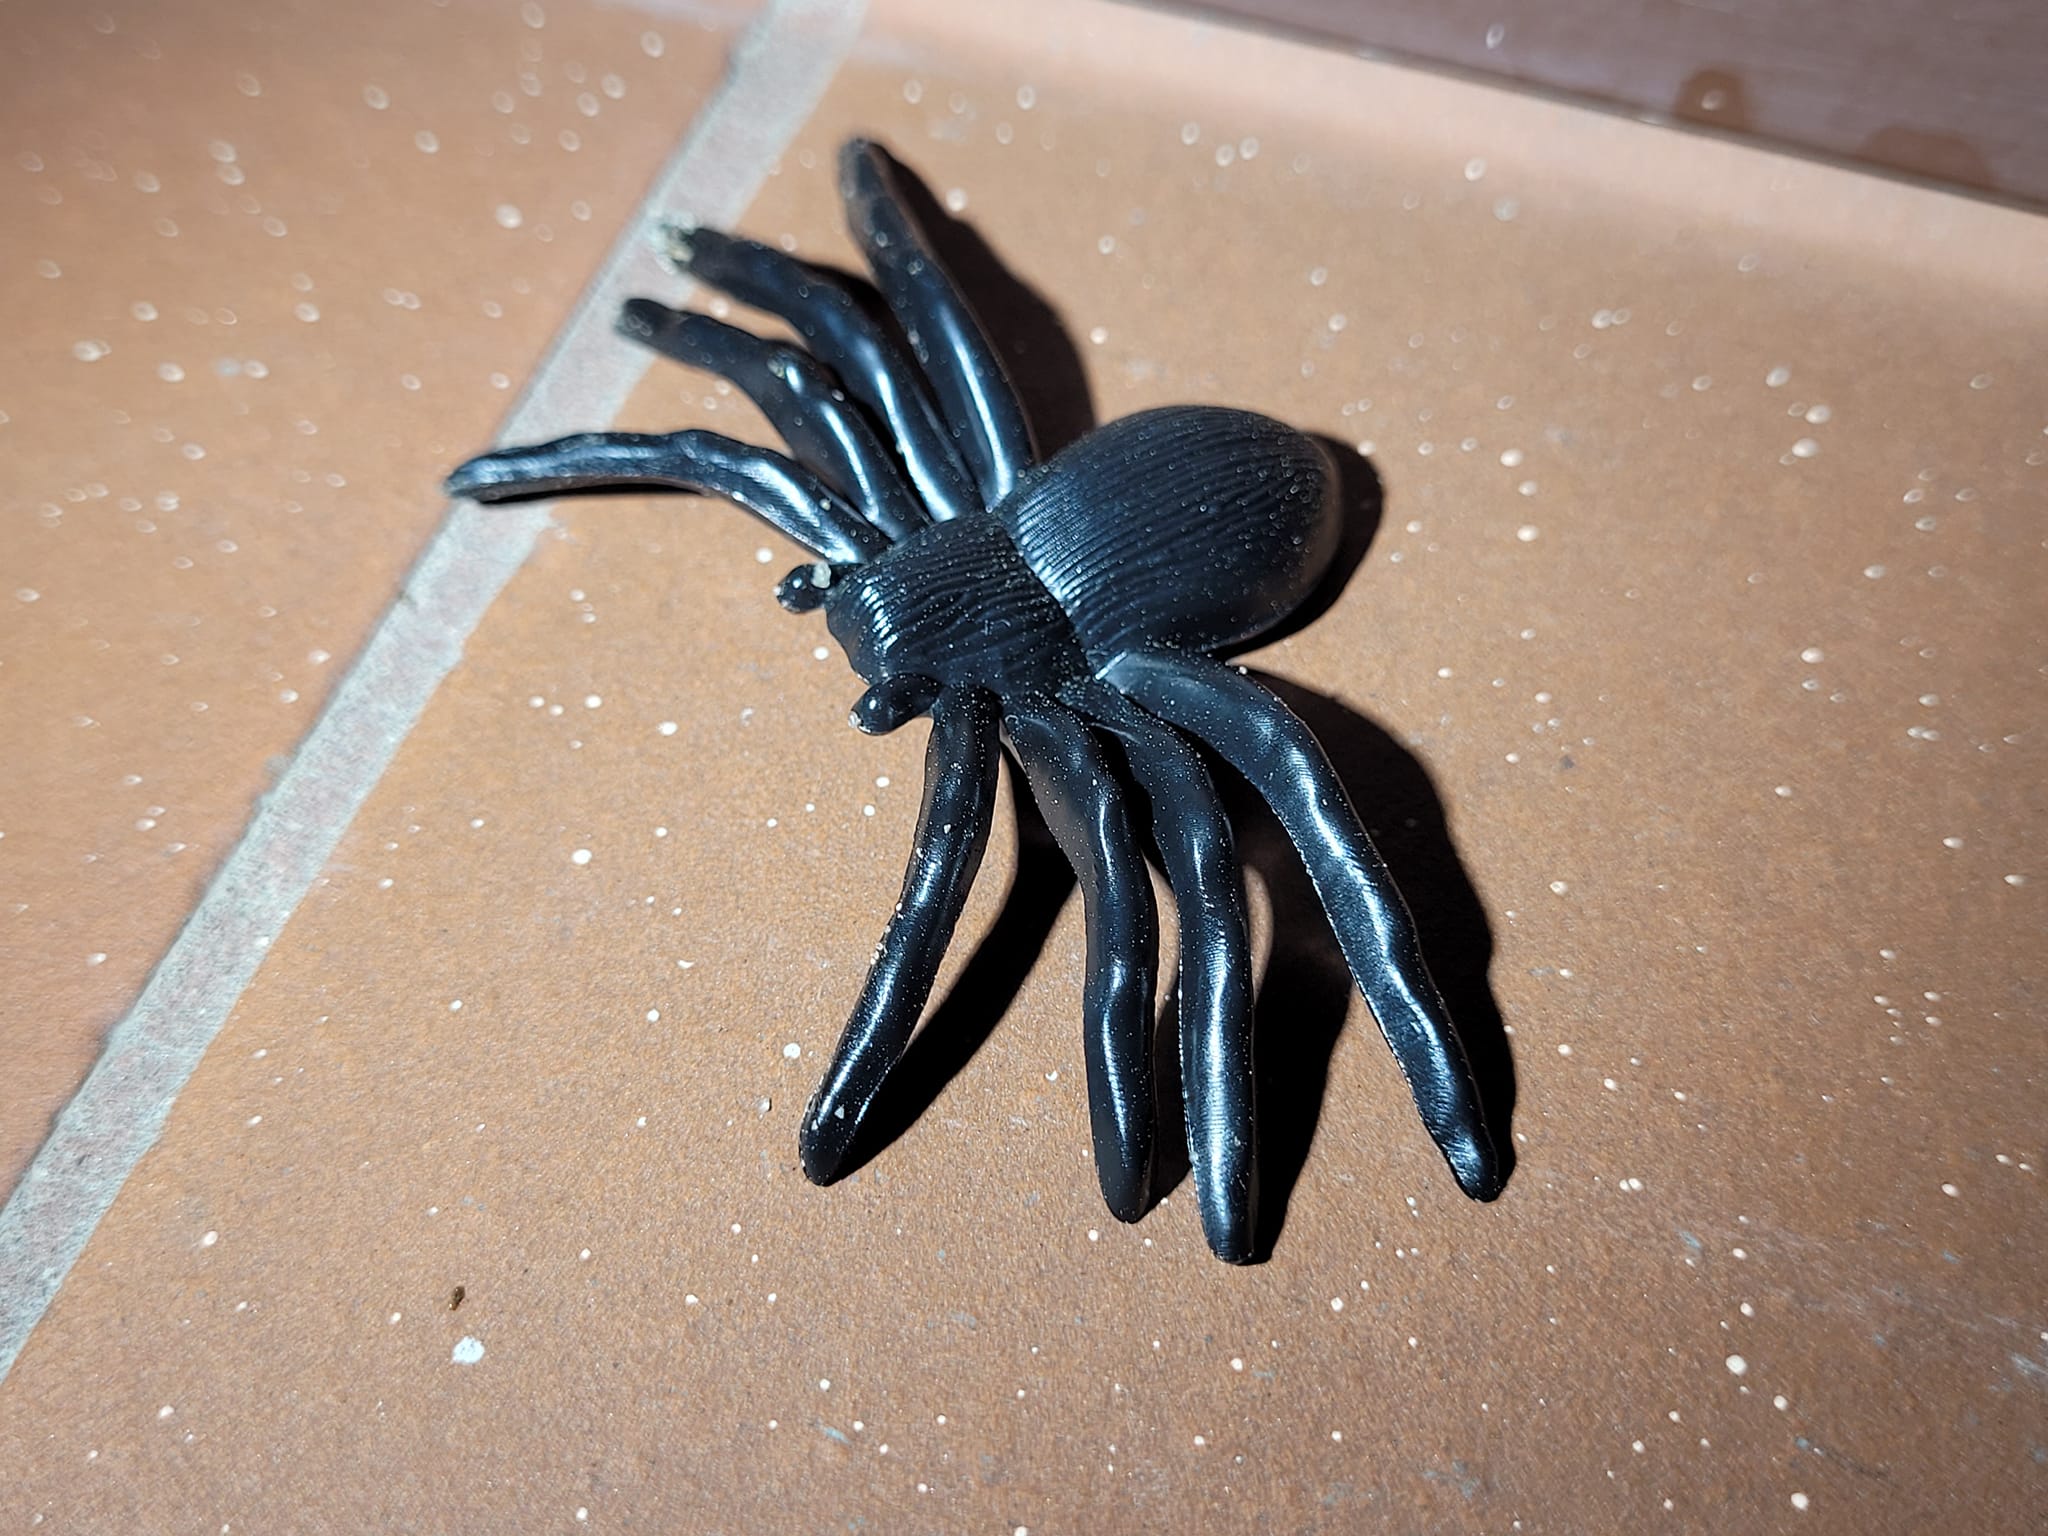 Wielki, włochaty i groźny pająk przeraził mieszkankę Lublina. Ptasznik okazał się plastikową zabawką (zdjęcia)